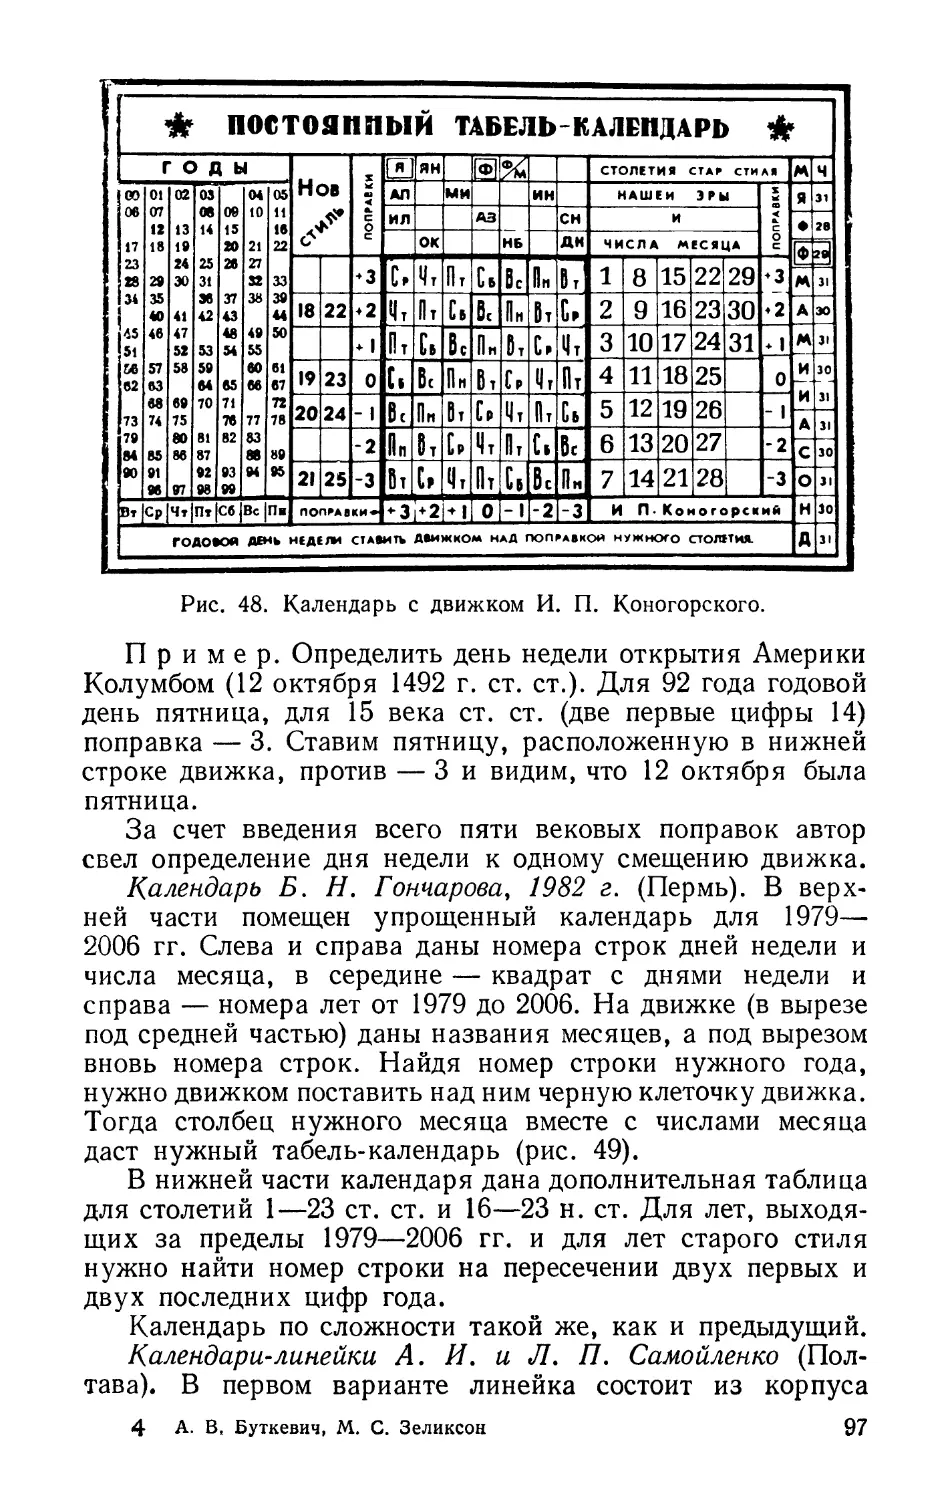 Календарь Б. Н. Гончарова, 1982 г.
Календари-линейки А. И. и Л. П. Самойленко